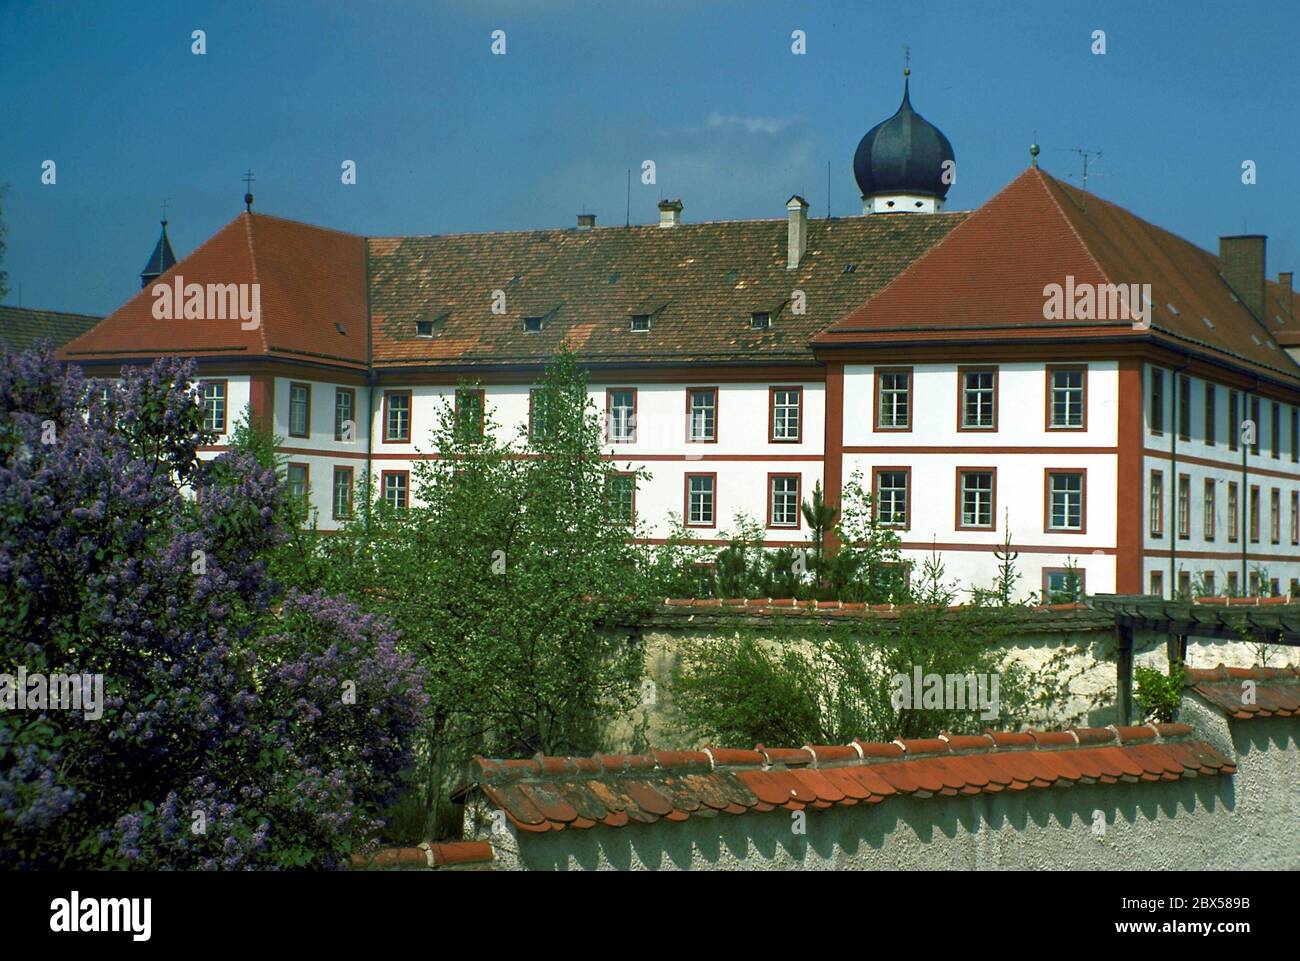 Das Augustinerkloster Beuerberg, das sich im Alpenvorland, im sogenannten Pfaffenwinkel, befindet, wurde 1121 gegründet. (Undated image) Stockfoto